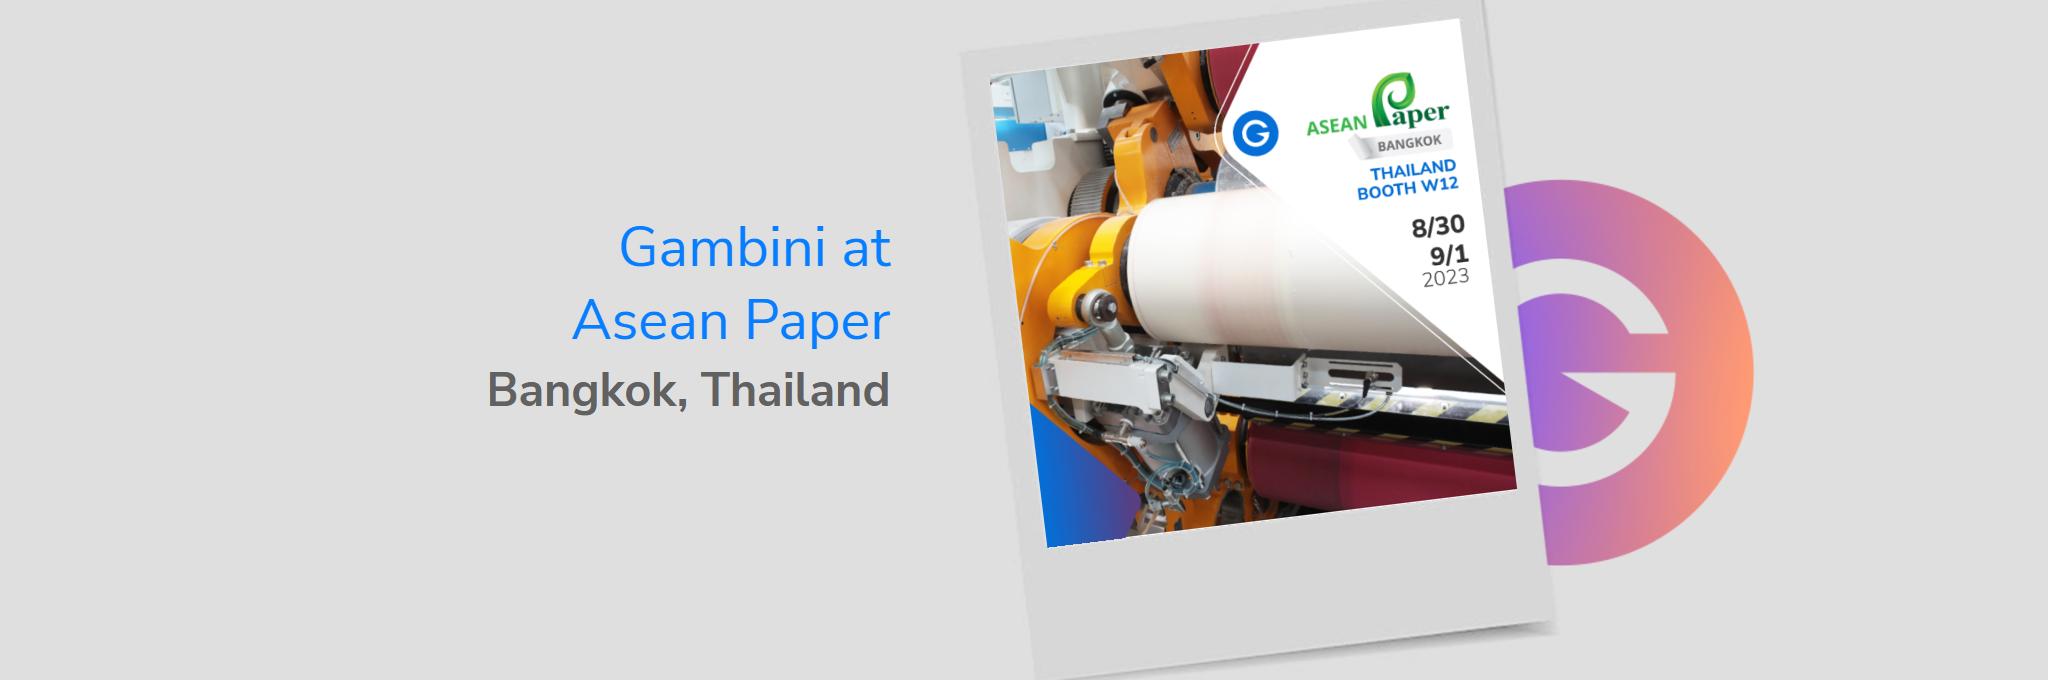 Gambini at Asean Paper